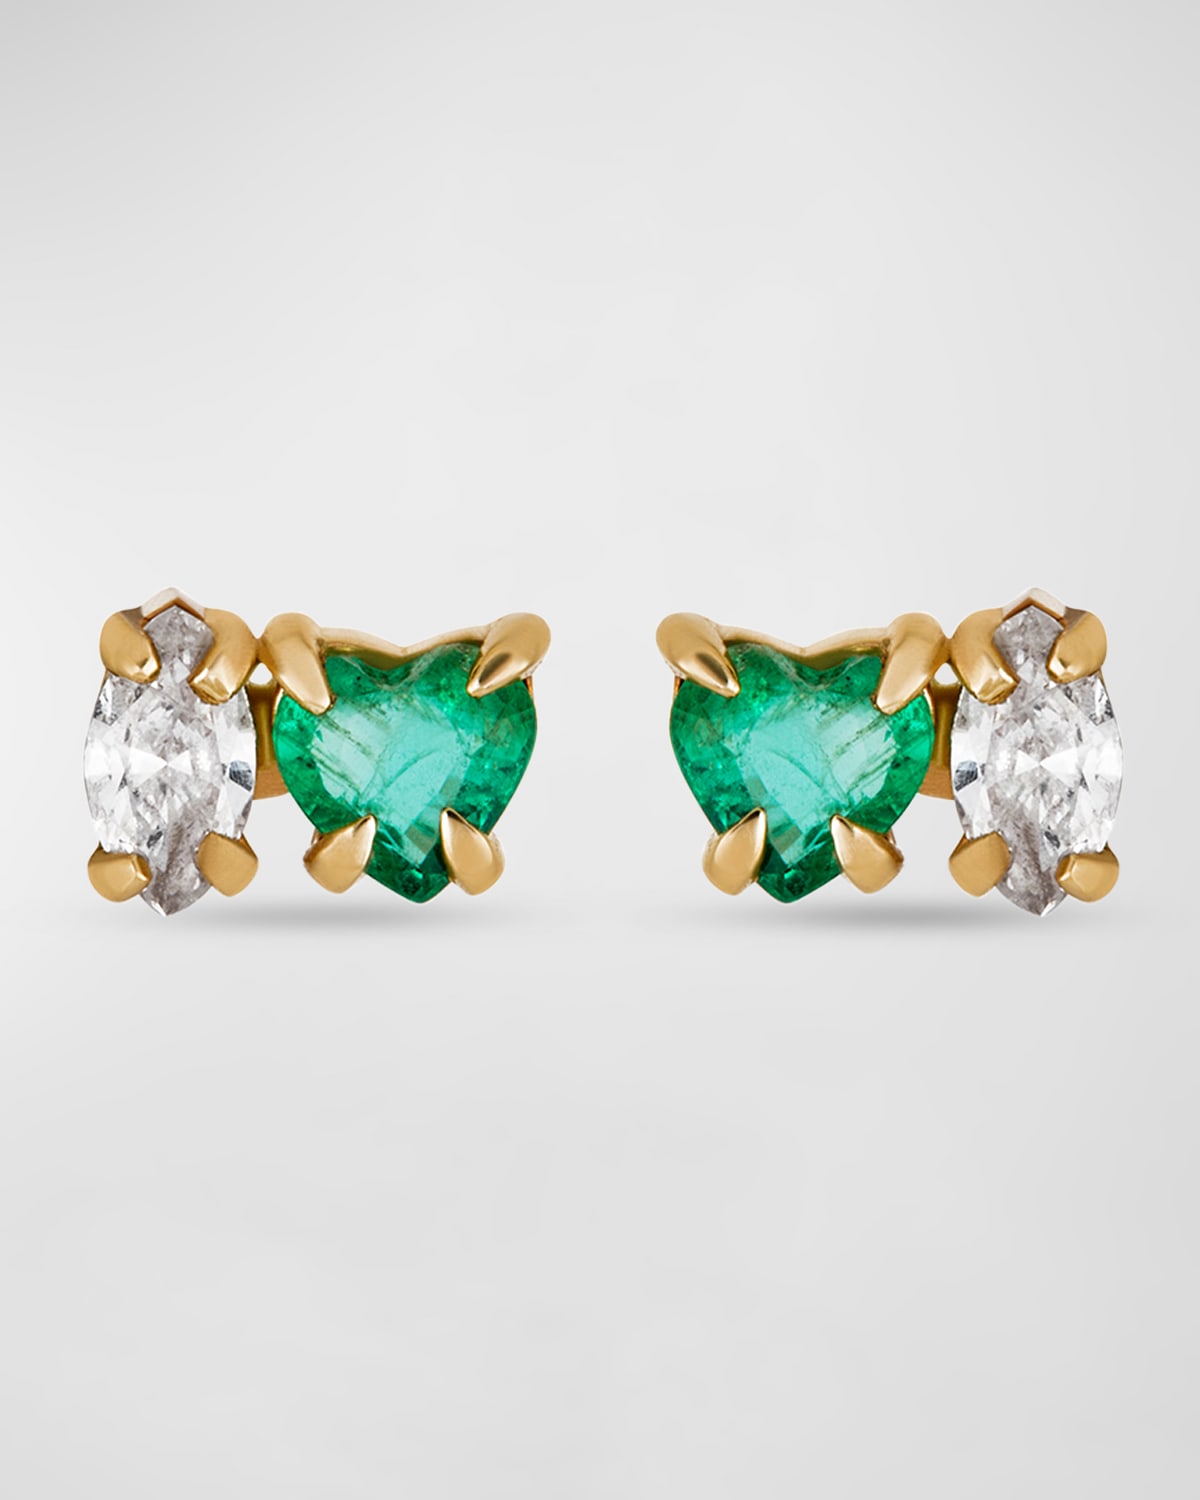 Emerald Luxe Stud Earrings with Diamonds